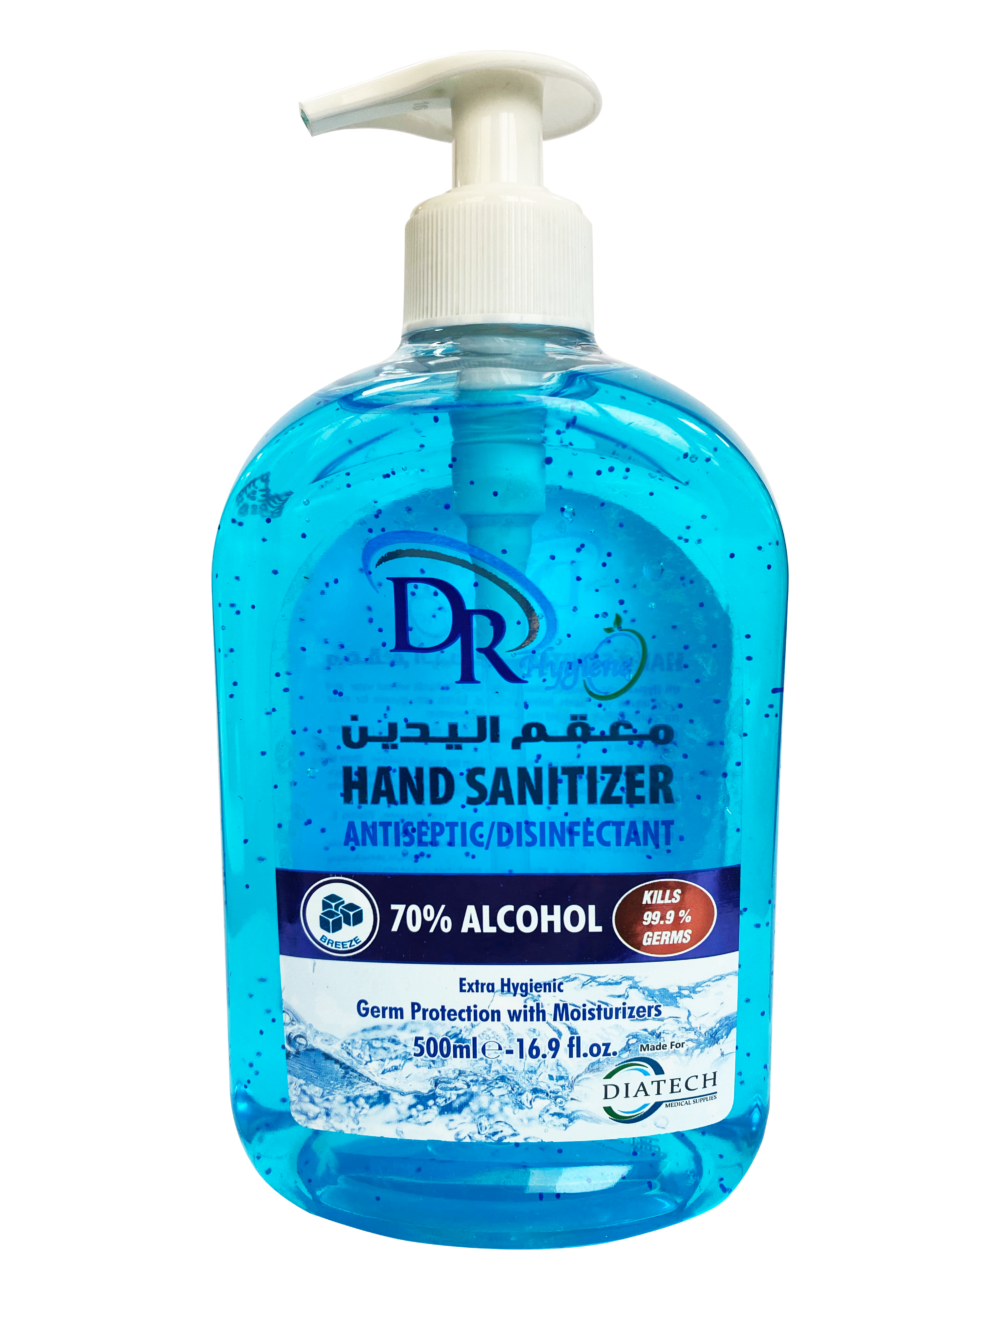 Diatech Hand Sanitizer 500ml - Breeze